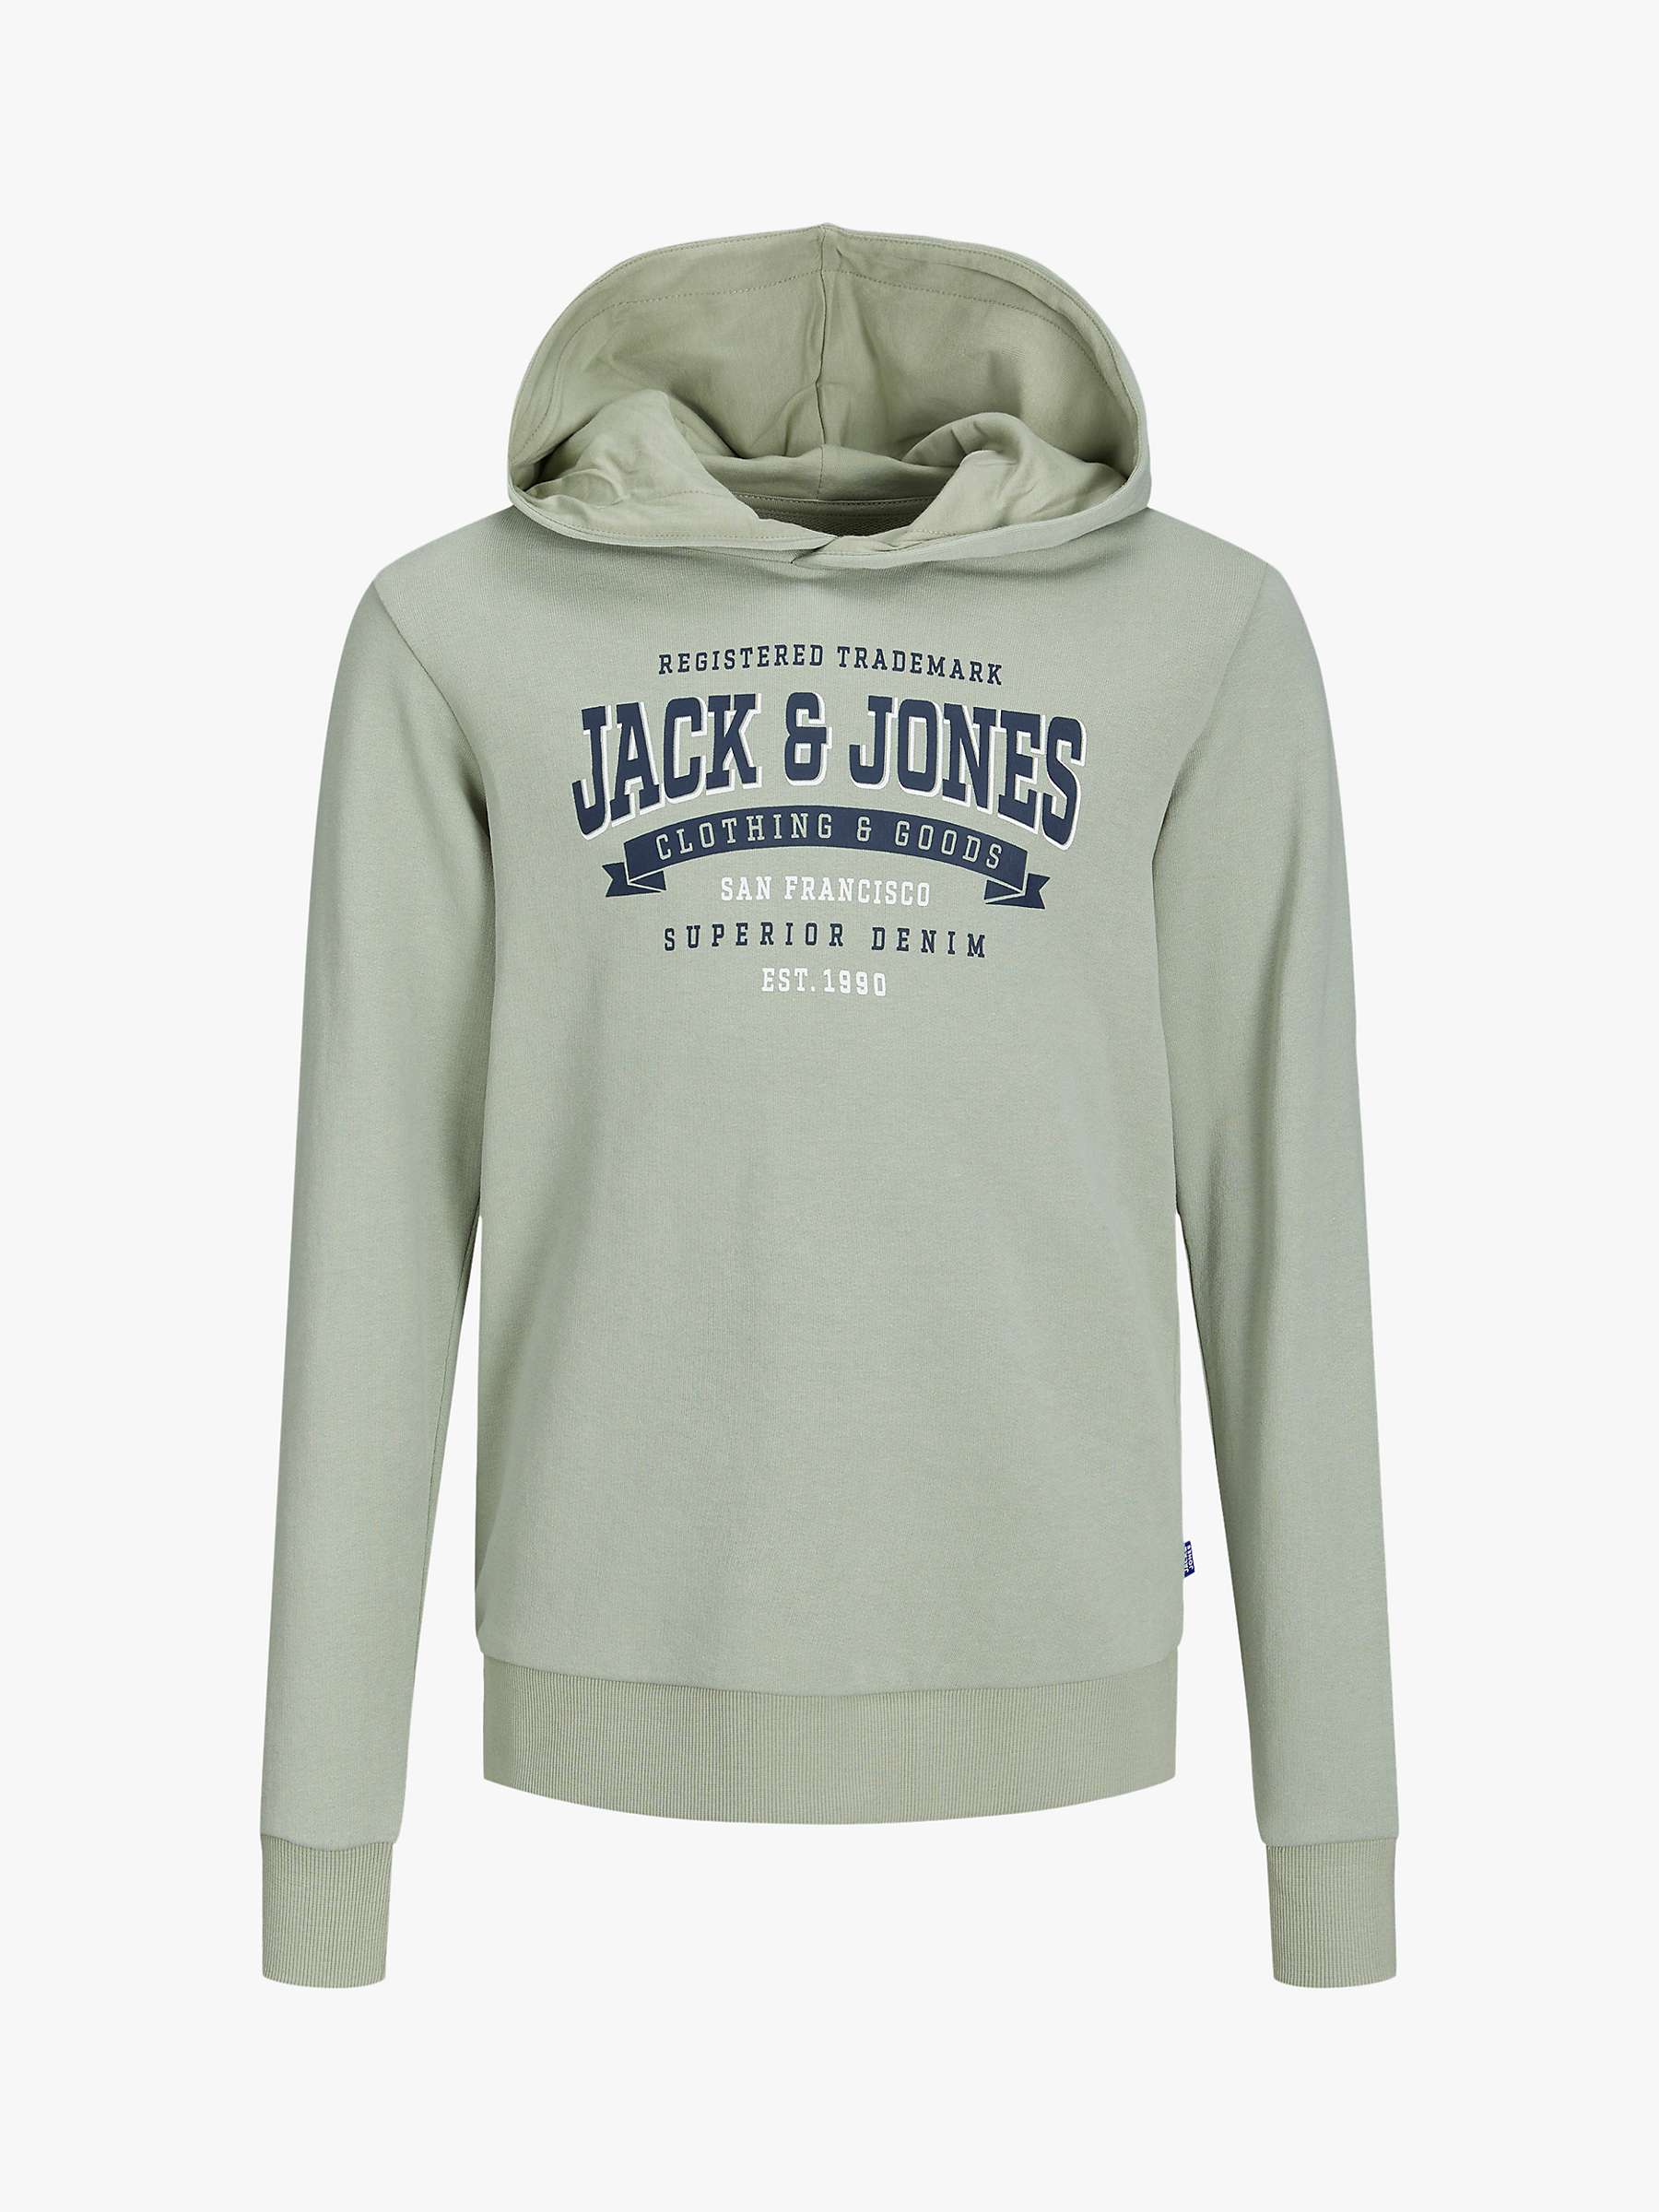 Buy Jack & Jones Kids' Logo Hoodie, Desert Sage Online at johnlewis.com